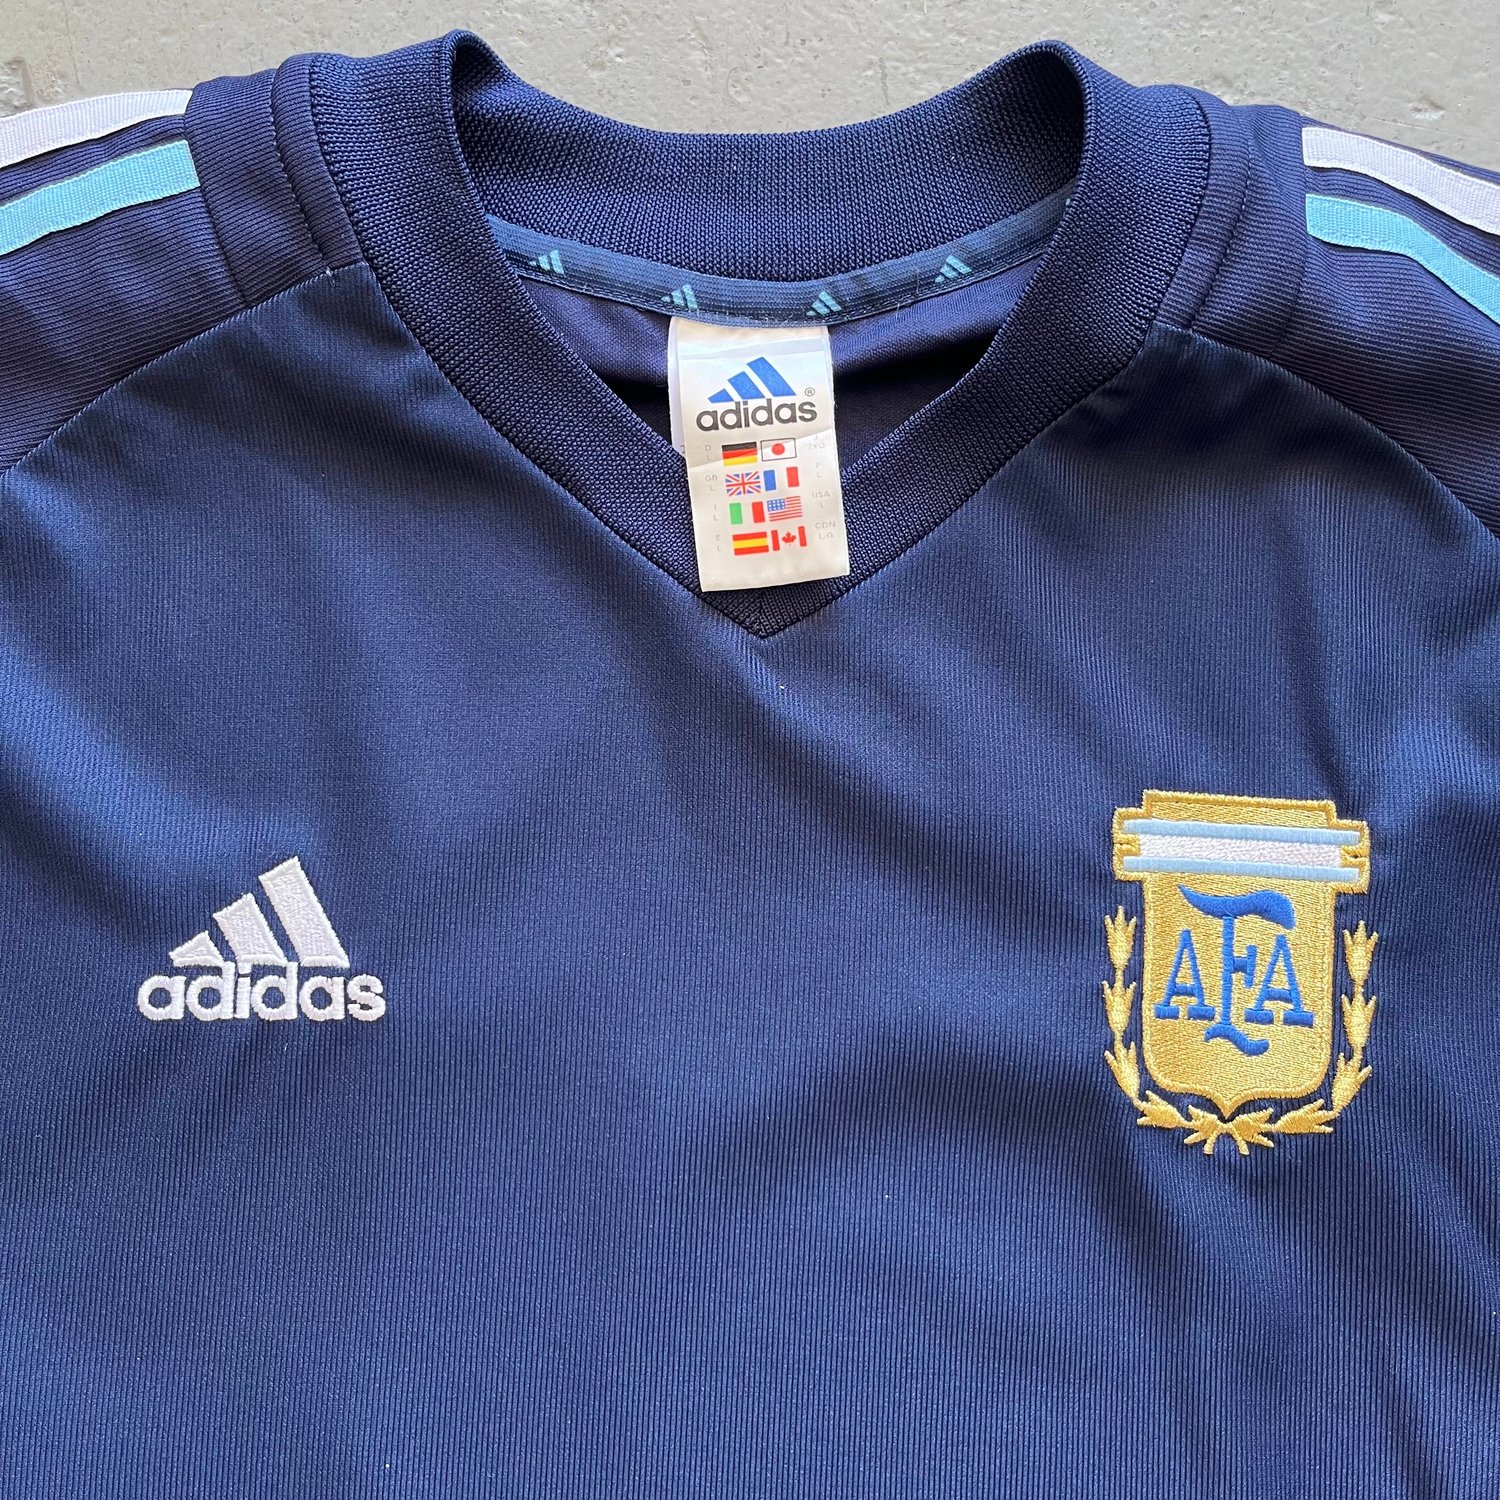 Image of 02/04 Argentina away shirt size large “ 29”